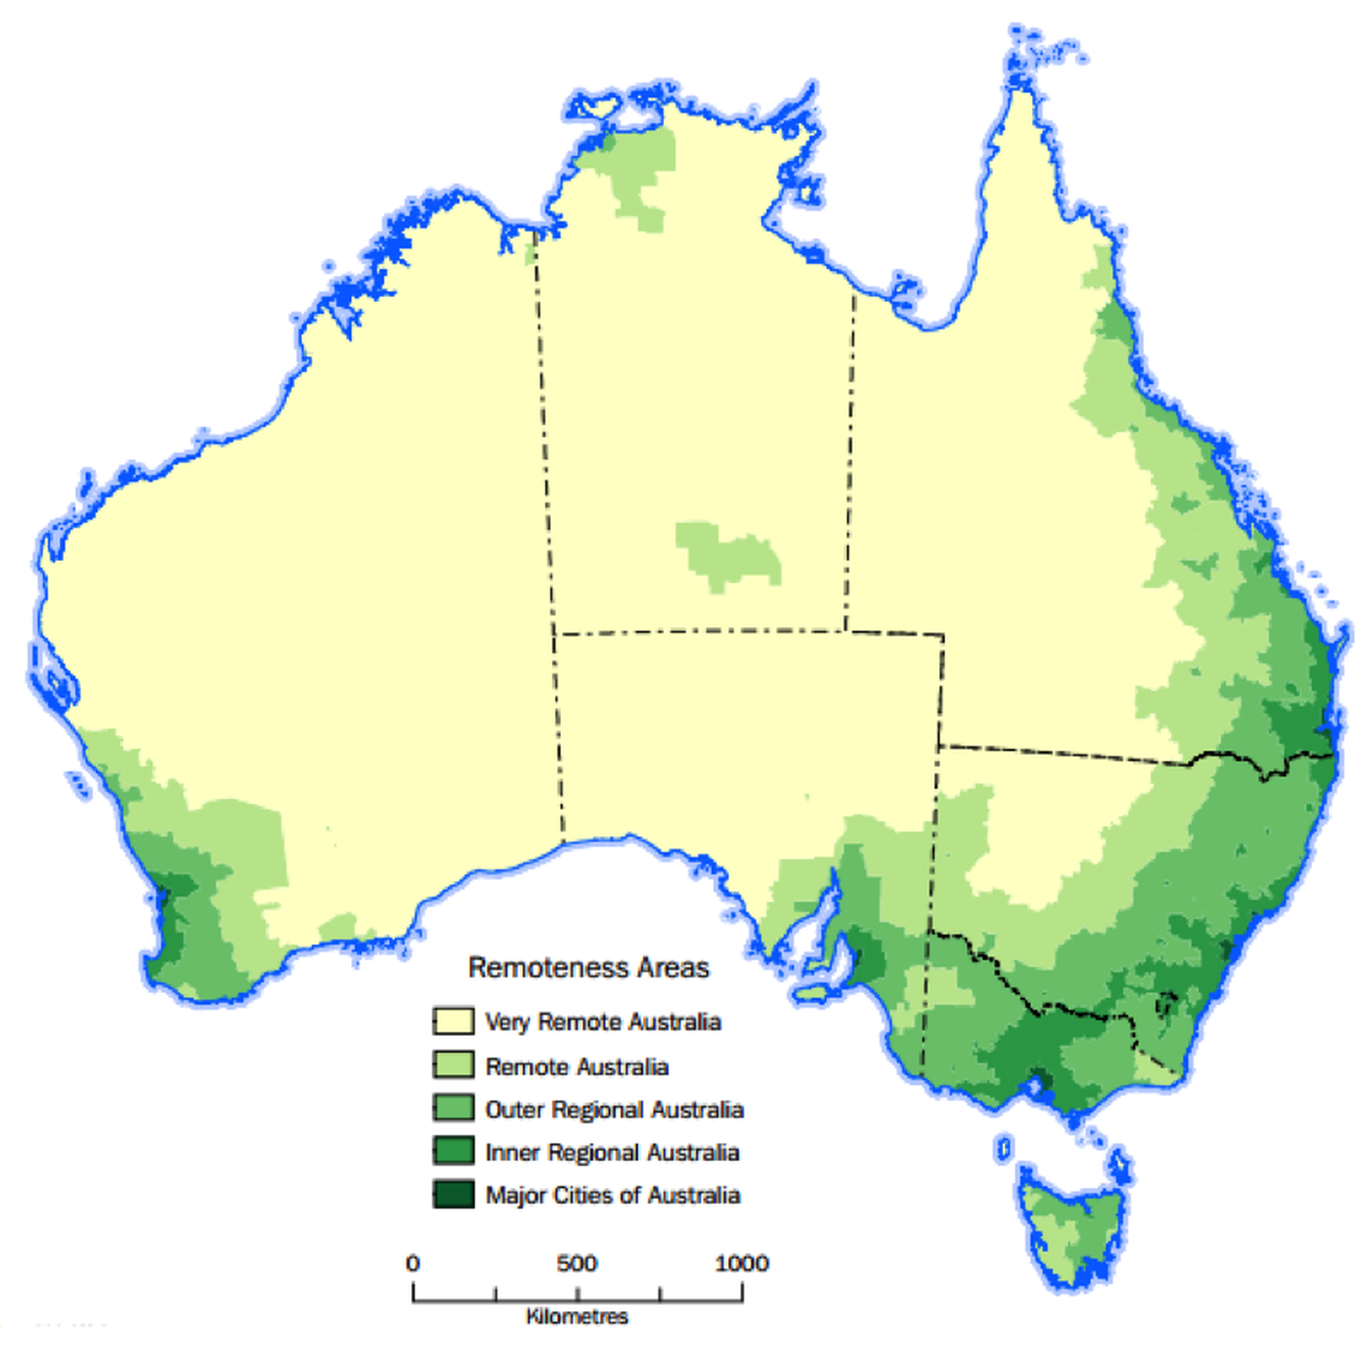 Rural and Remote Australia